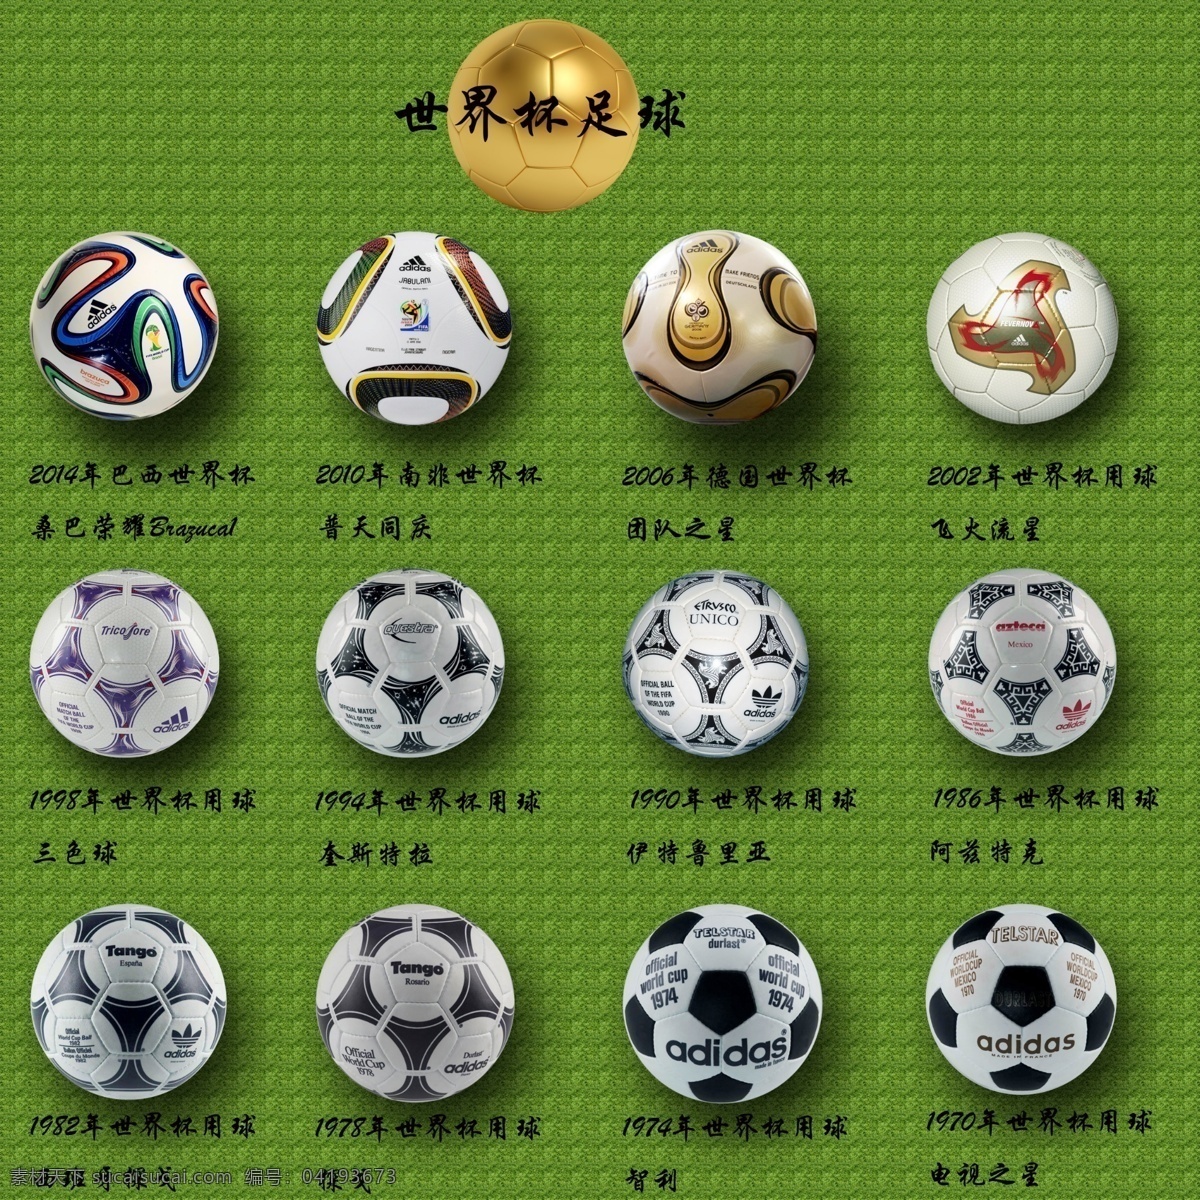 2014 巴西 世界杯 足球 ps 淘宝 体育场 圆形 足球图案 黄金球 12届 足球图片 南非 绿茵场 球 世界杯用球 电商 分层